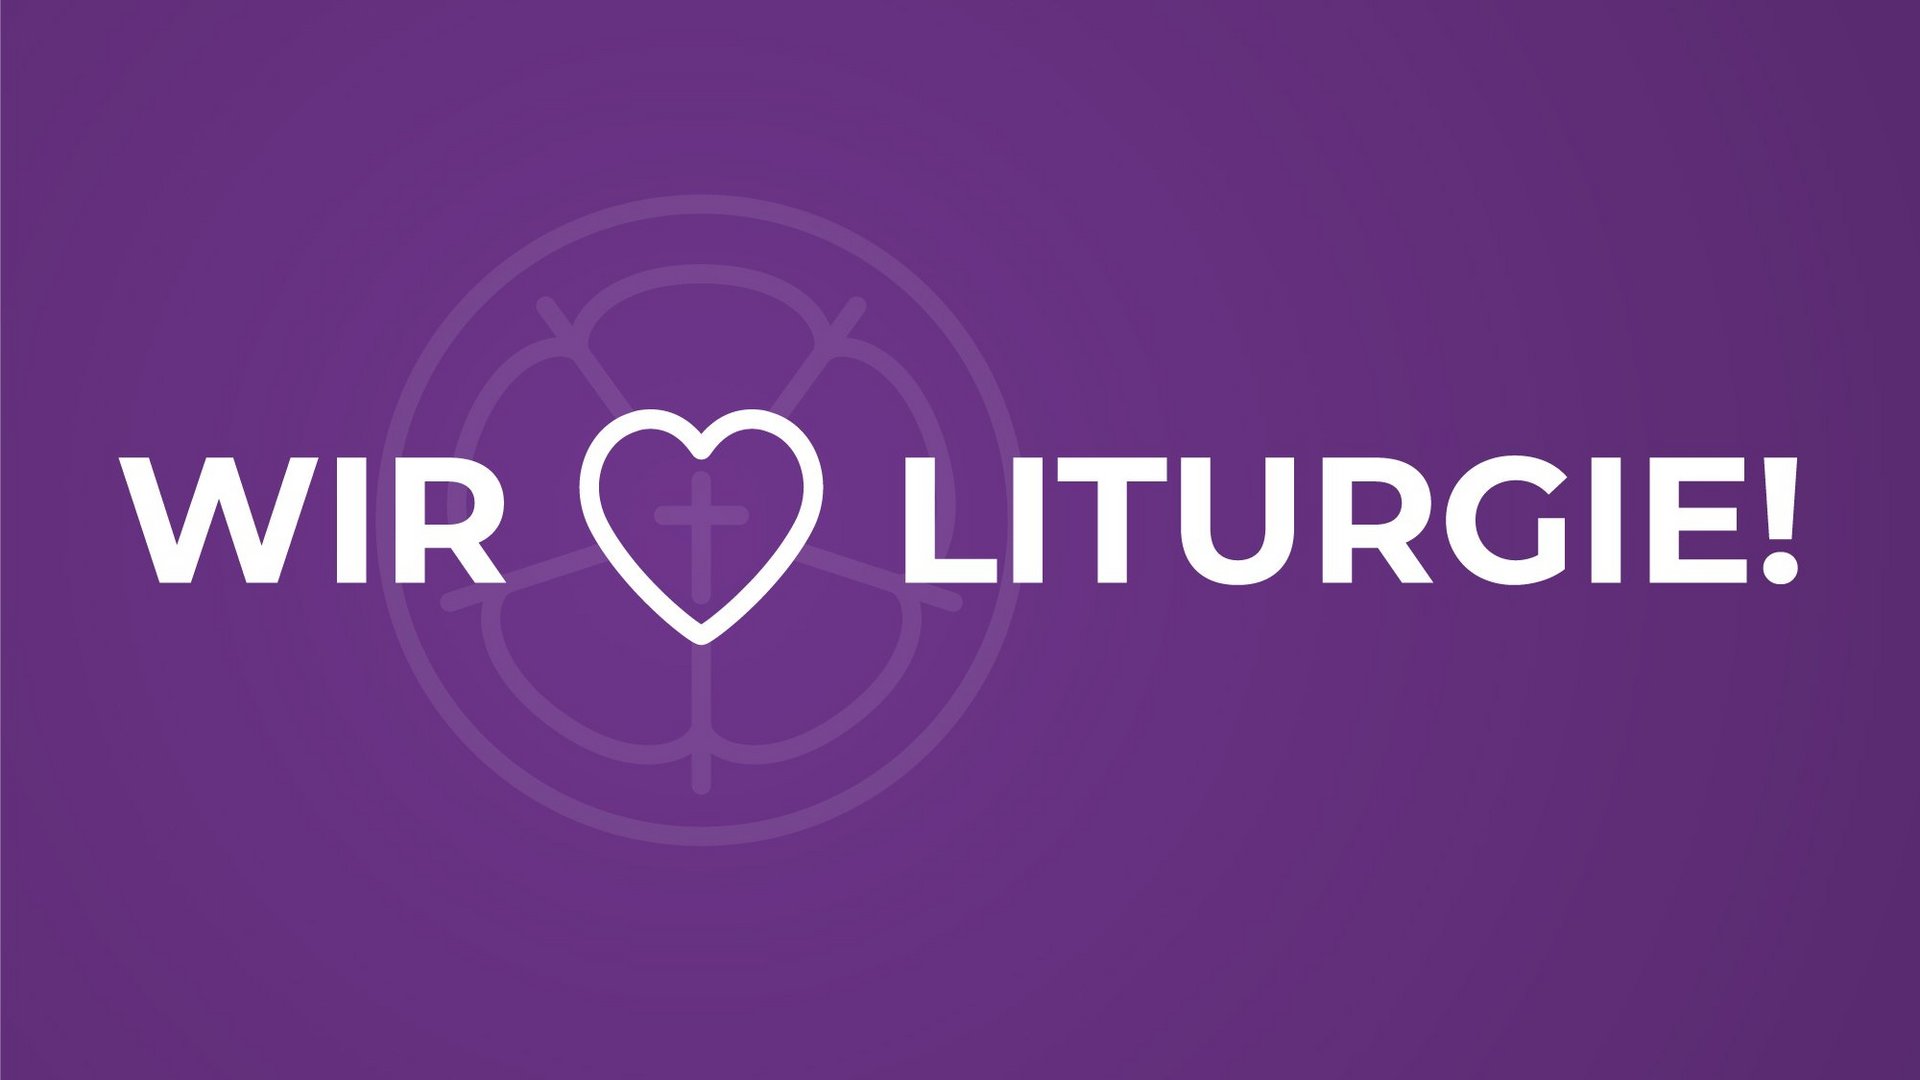 Auf einer violetten Fläche steht in weißen Buchstaben "Wir lieben Liturgie!", wobei das Wort "lieben" durch ein Herz ersetzt ist.